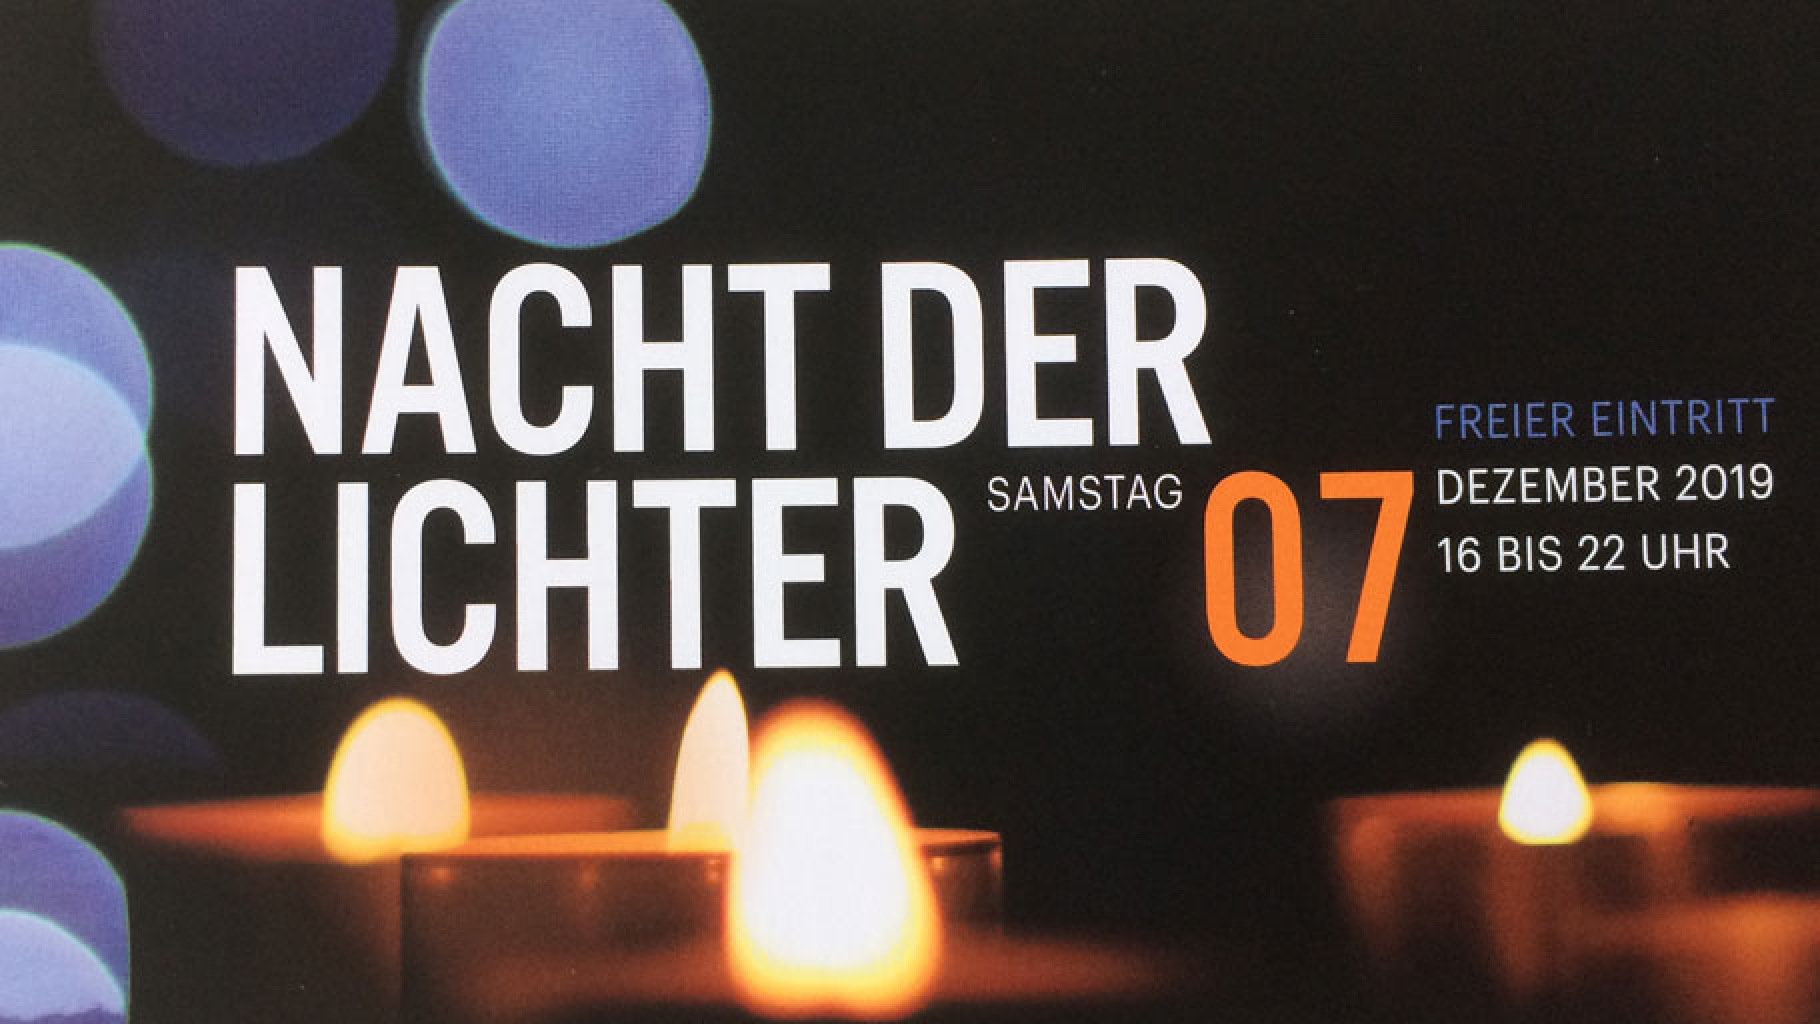 Nacht der Lichter 2019 im Oxfam Shop Frankfurt-Bockenheim